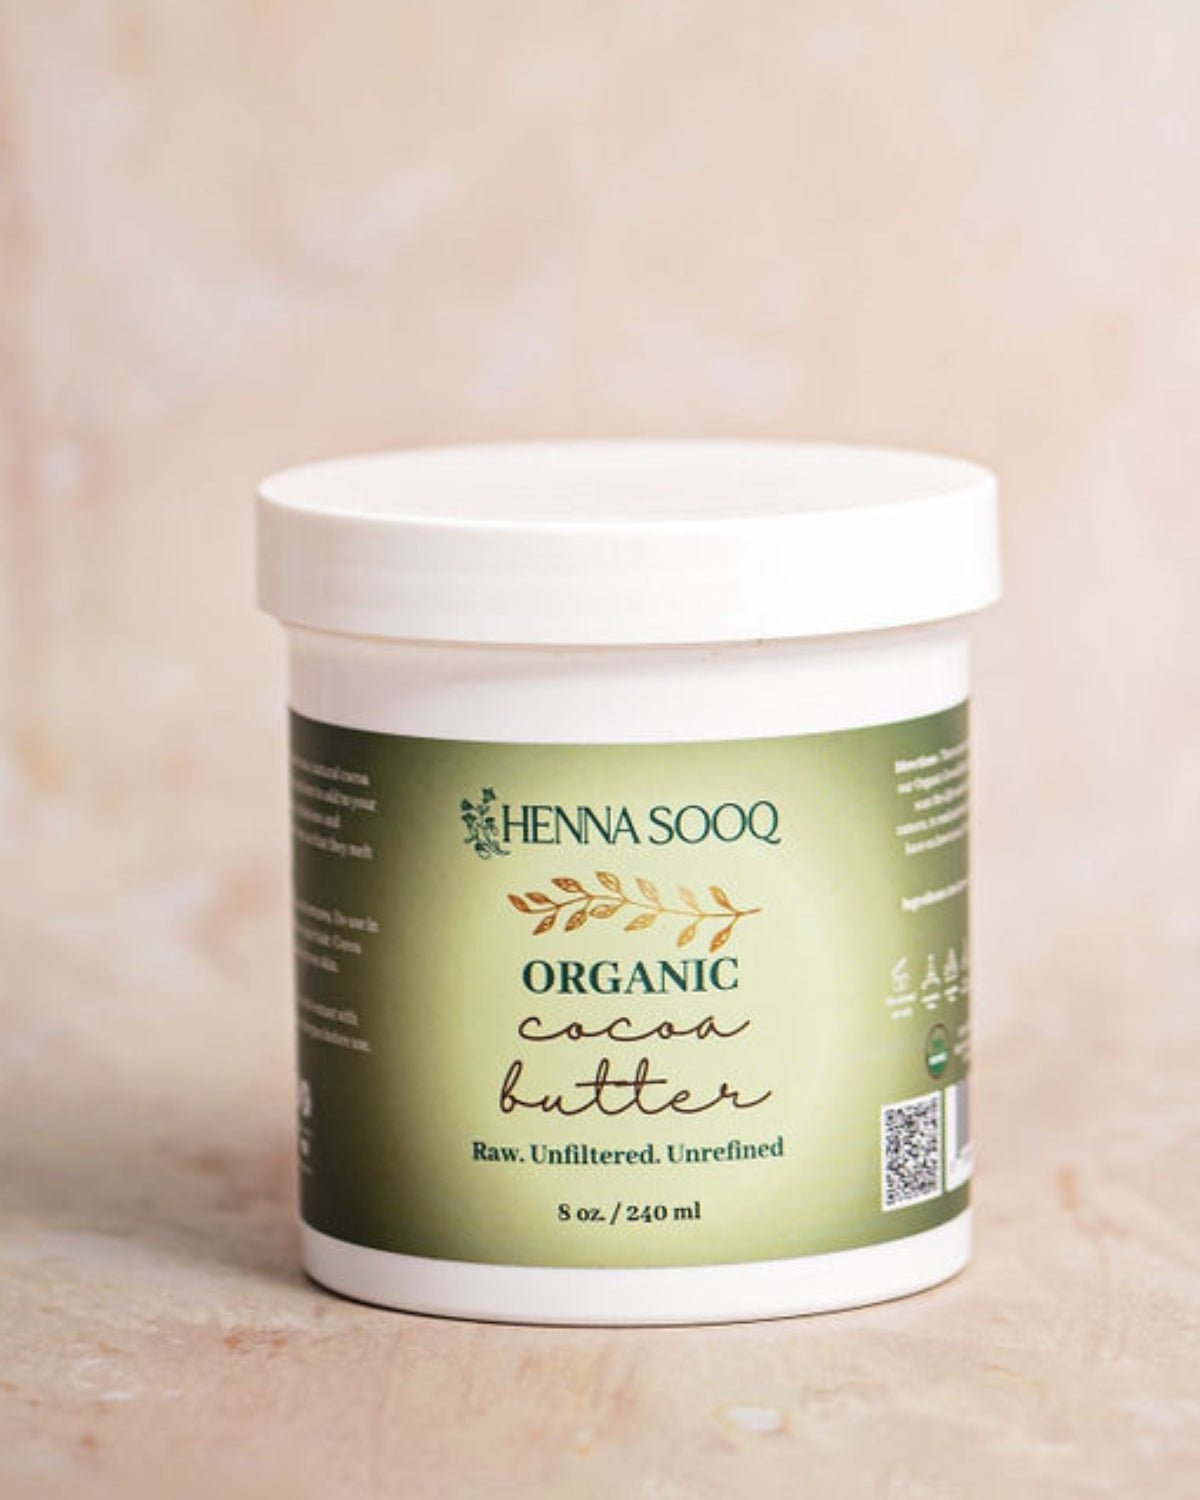 Organic Cocoa Butter - Henna Sooq